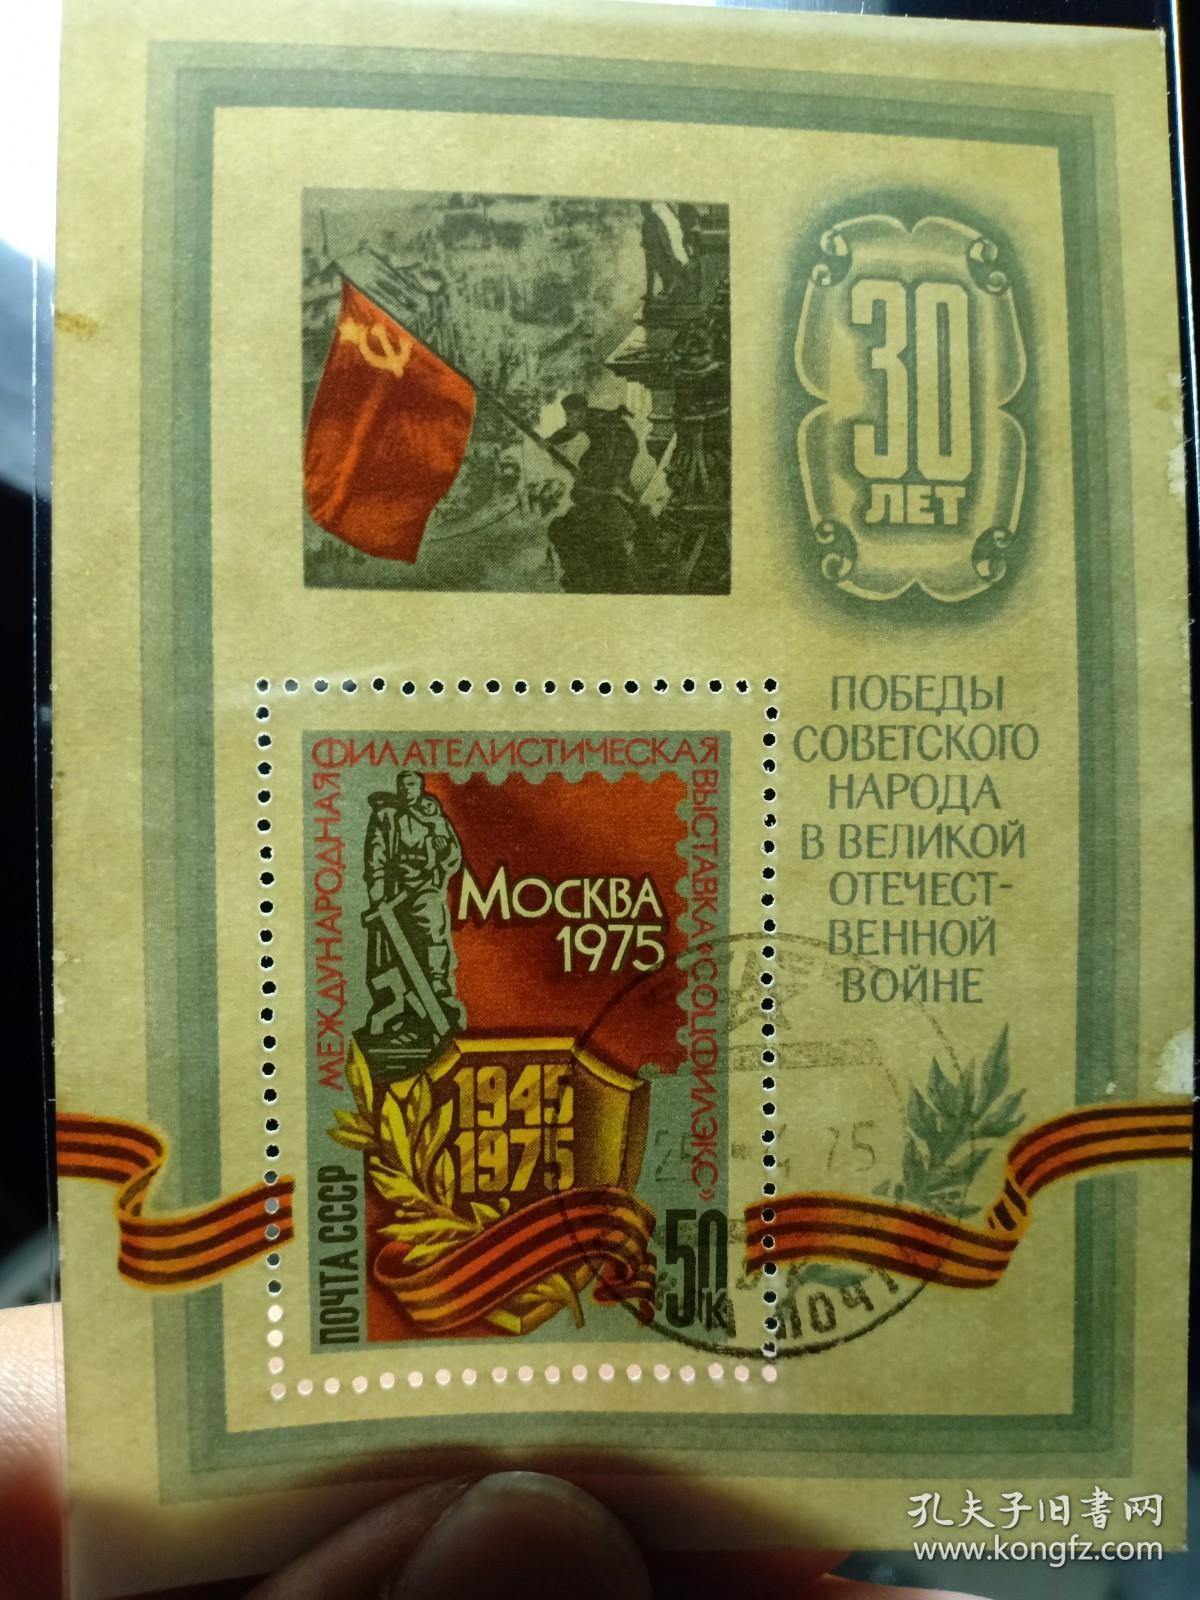 苏联邮票 苏联小型张 50K 1975年第二次世界大战胜利30周年纪念 苏联红军占领柏林 苏联红军把正义的旗帜插在纳粹德国国会大厦的屋顶 二战邮票  柏林会战(1945年4月16日~5月9日)，在第二次世界大战的苏德战争中，苏军实施的最后一次战略性进攻战役。1945年5月2日，苏联士兵在德国国会大厦的废墟上举起旗帜，成为苏联红军击败纳粹德国的胜利象征，成为一种集体记忆。